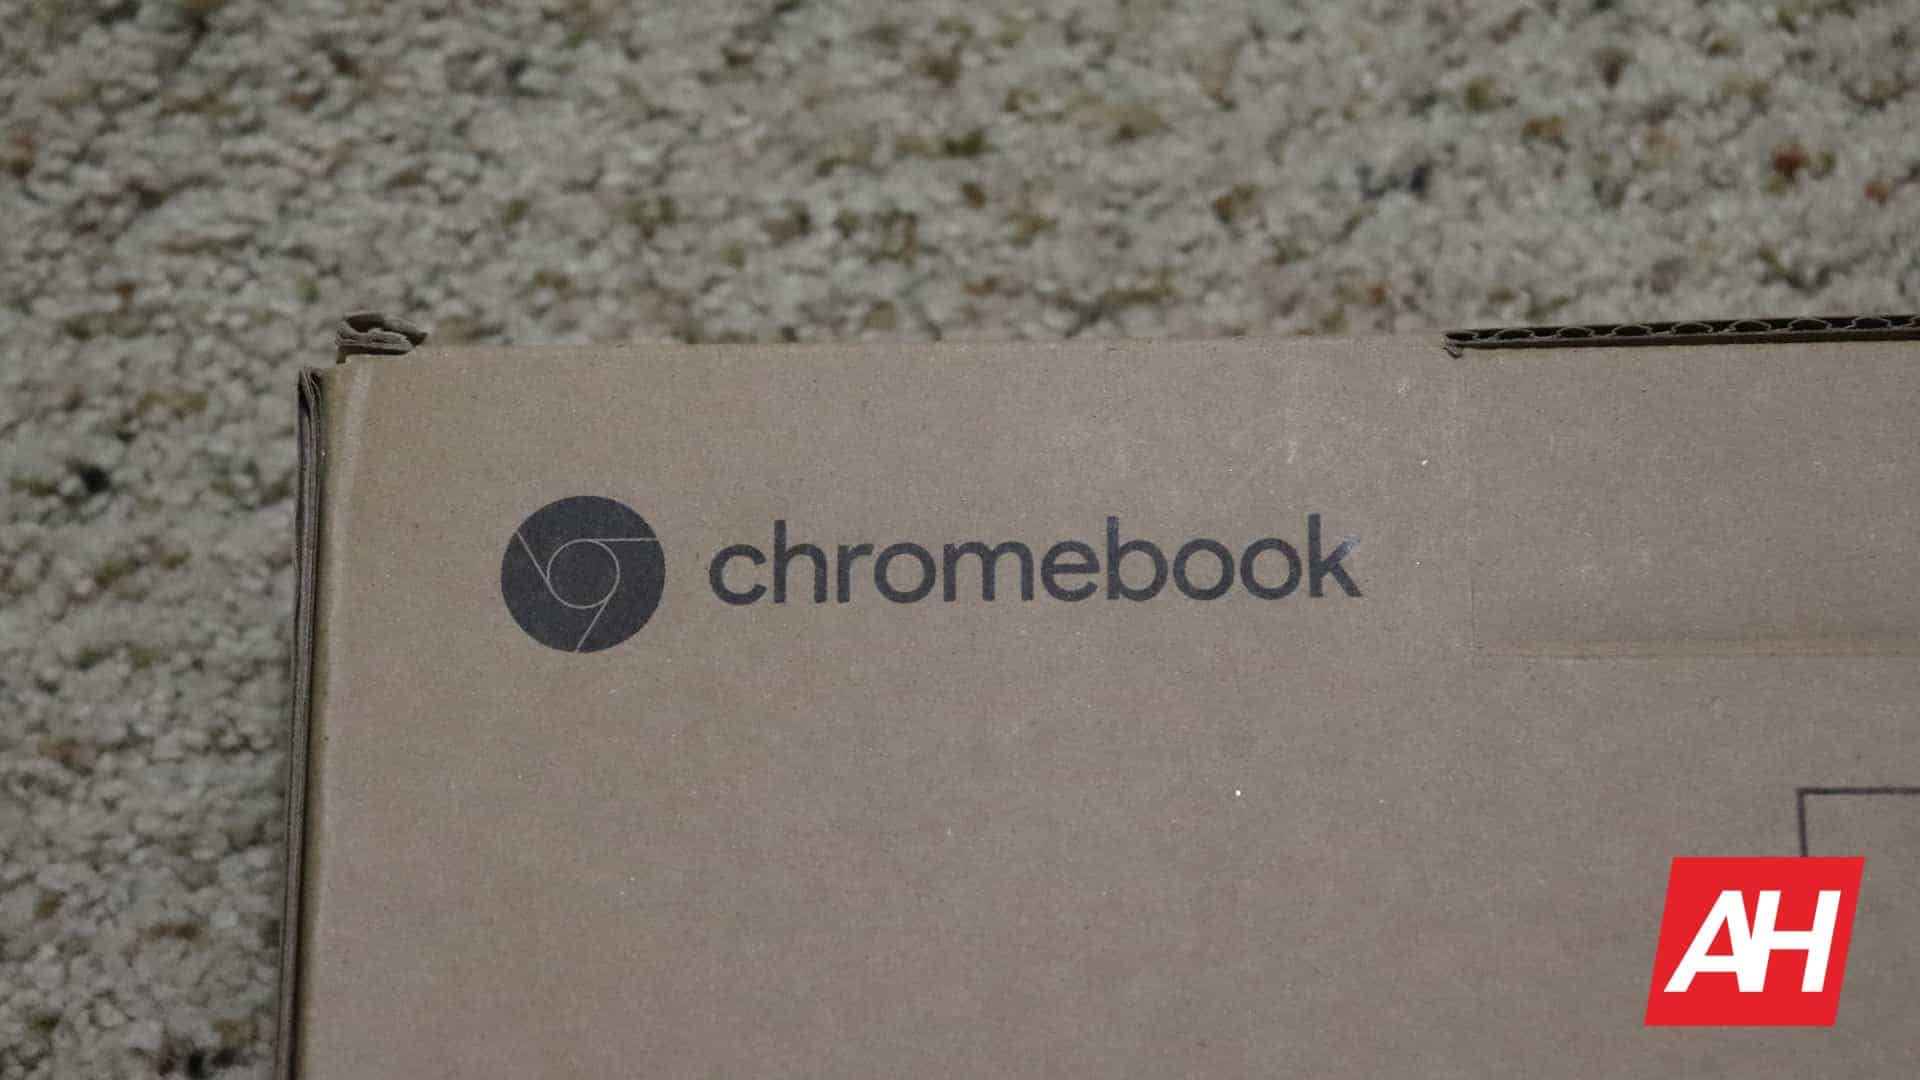 Chromebook доминирует на рынке ПК, планшетов и нетбуков по темпам роста